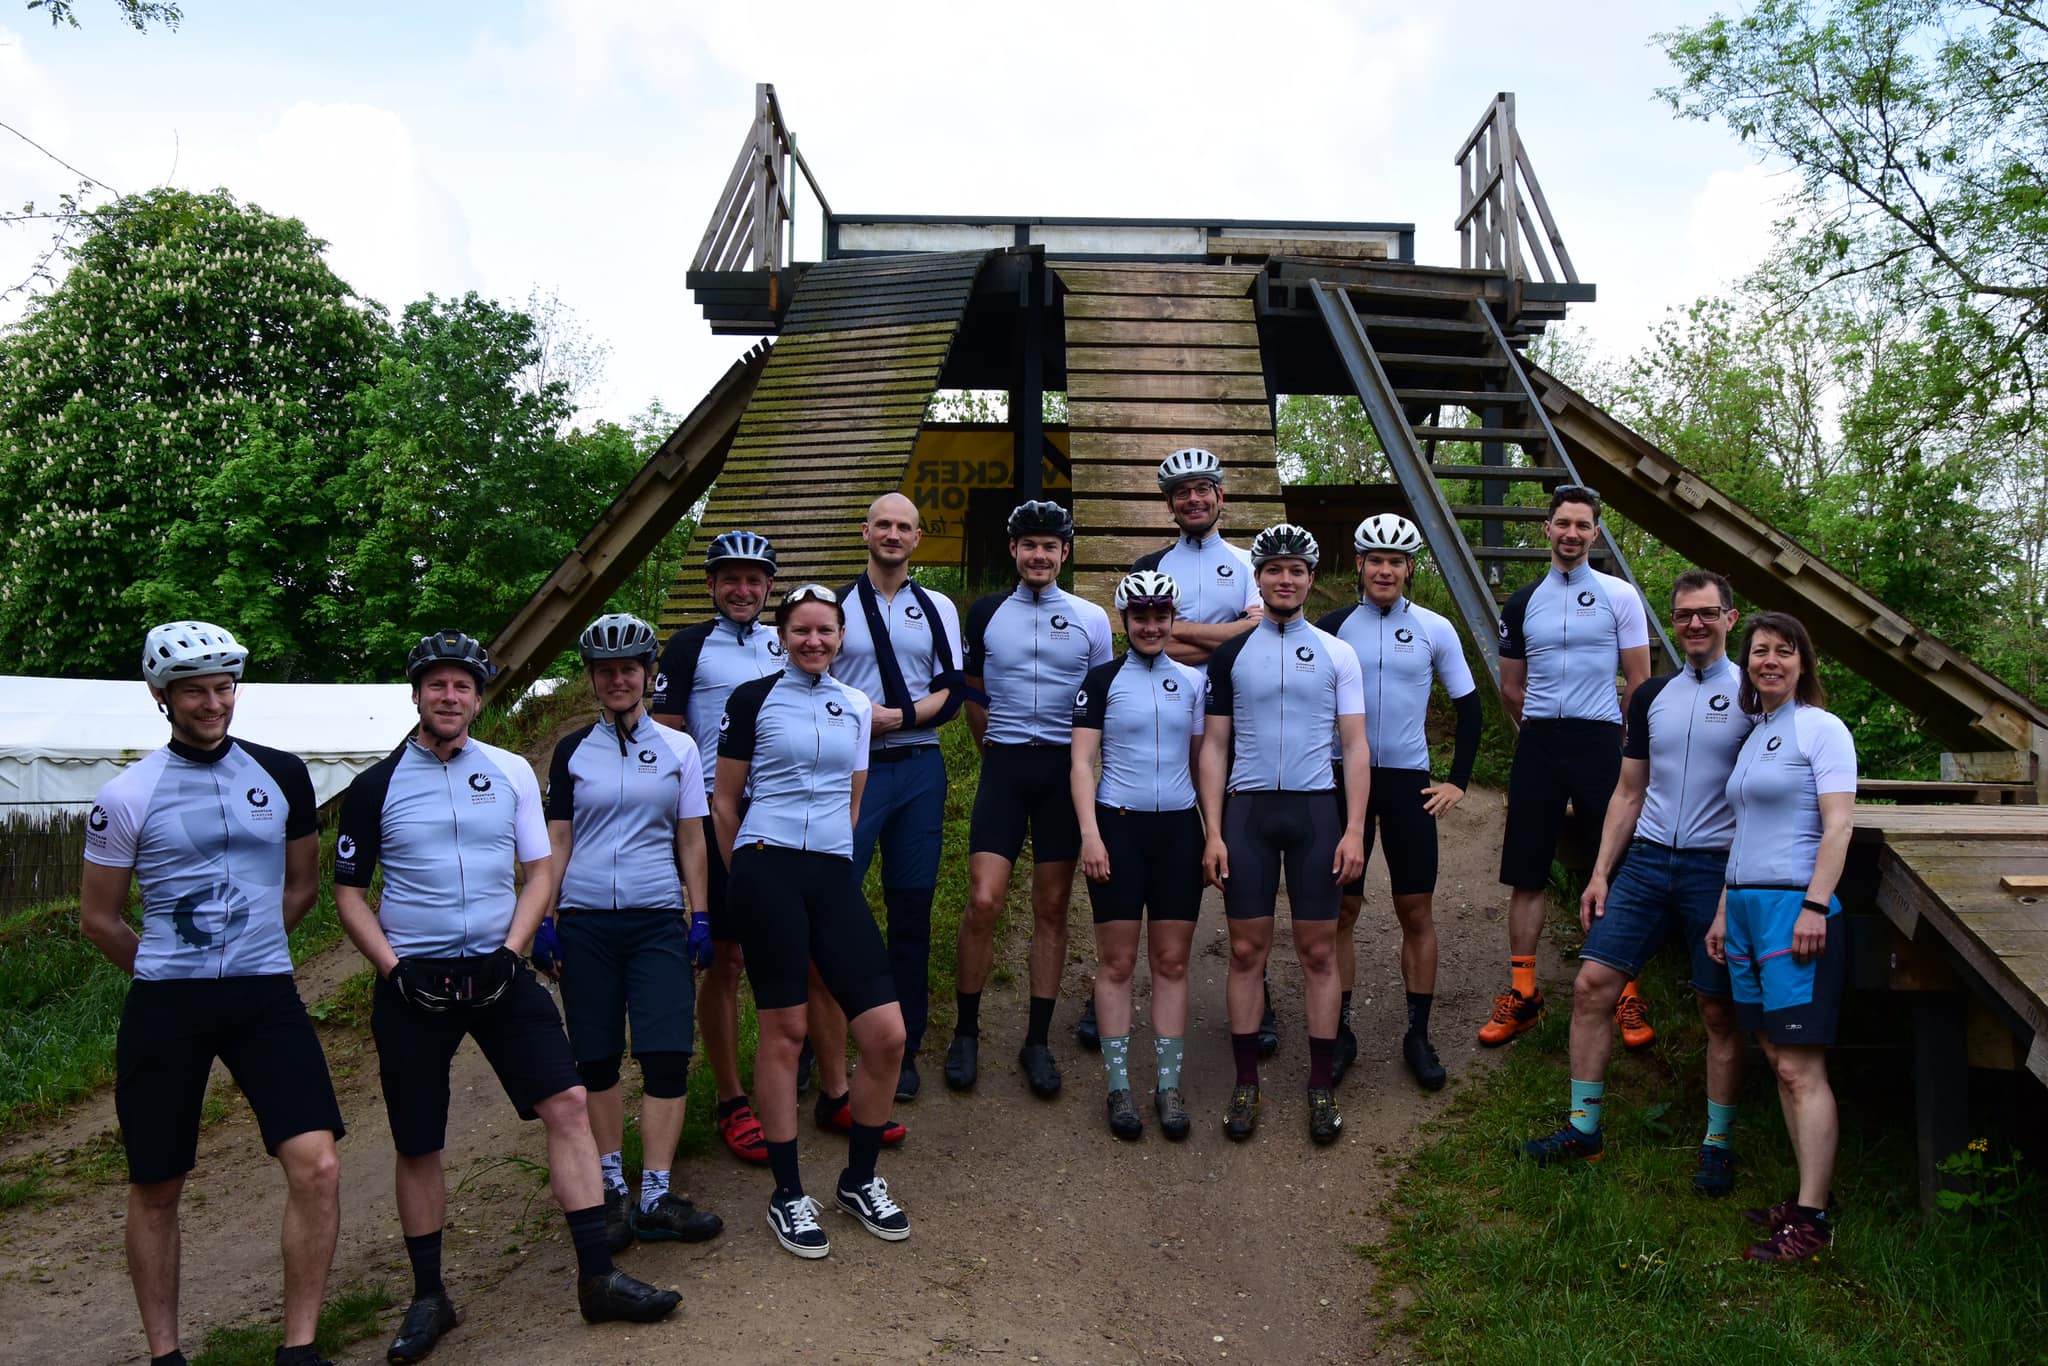 14 Radsportlerinnen in Trikots von DOWE (farbe weiß) vor einer pyramidenförmigen Aussichtsplattform